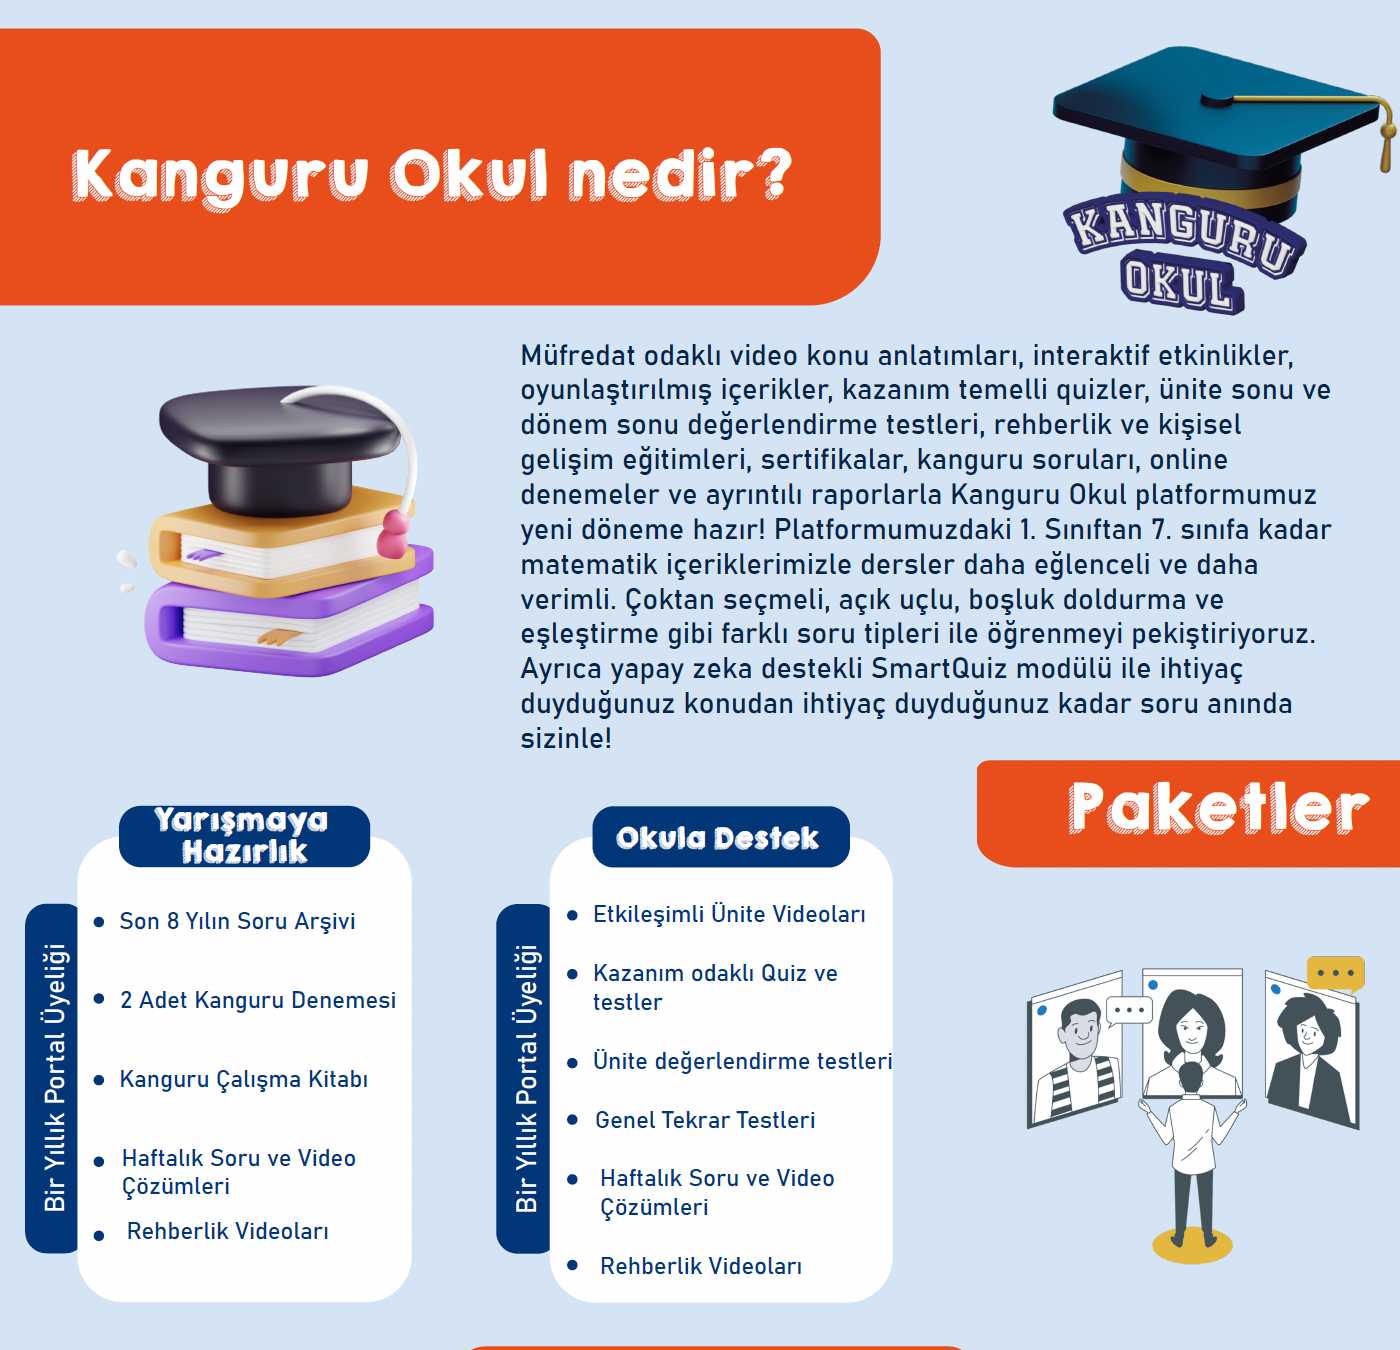 Kanguru Okul - Okula Destek Paketi - 1 yıllık abonelik